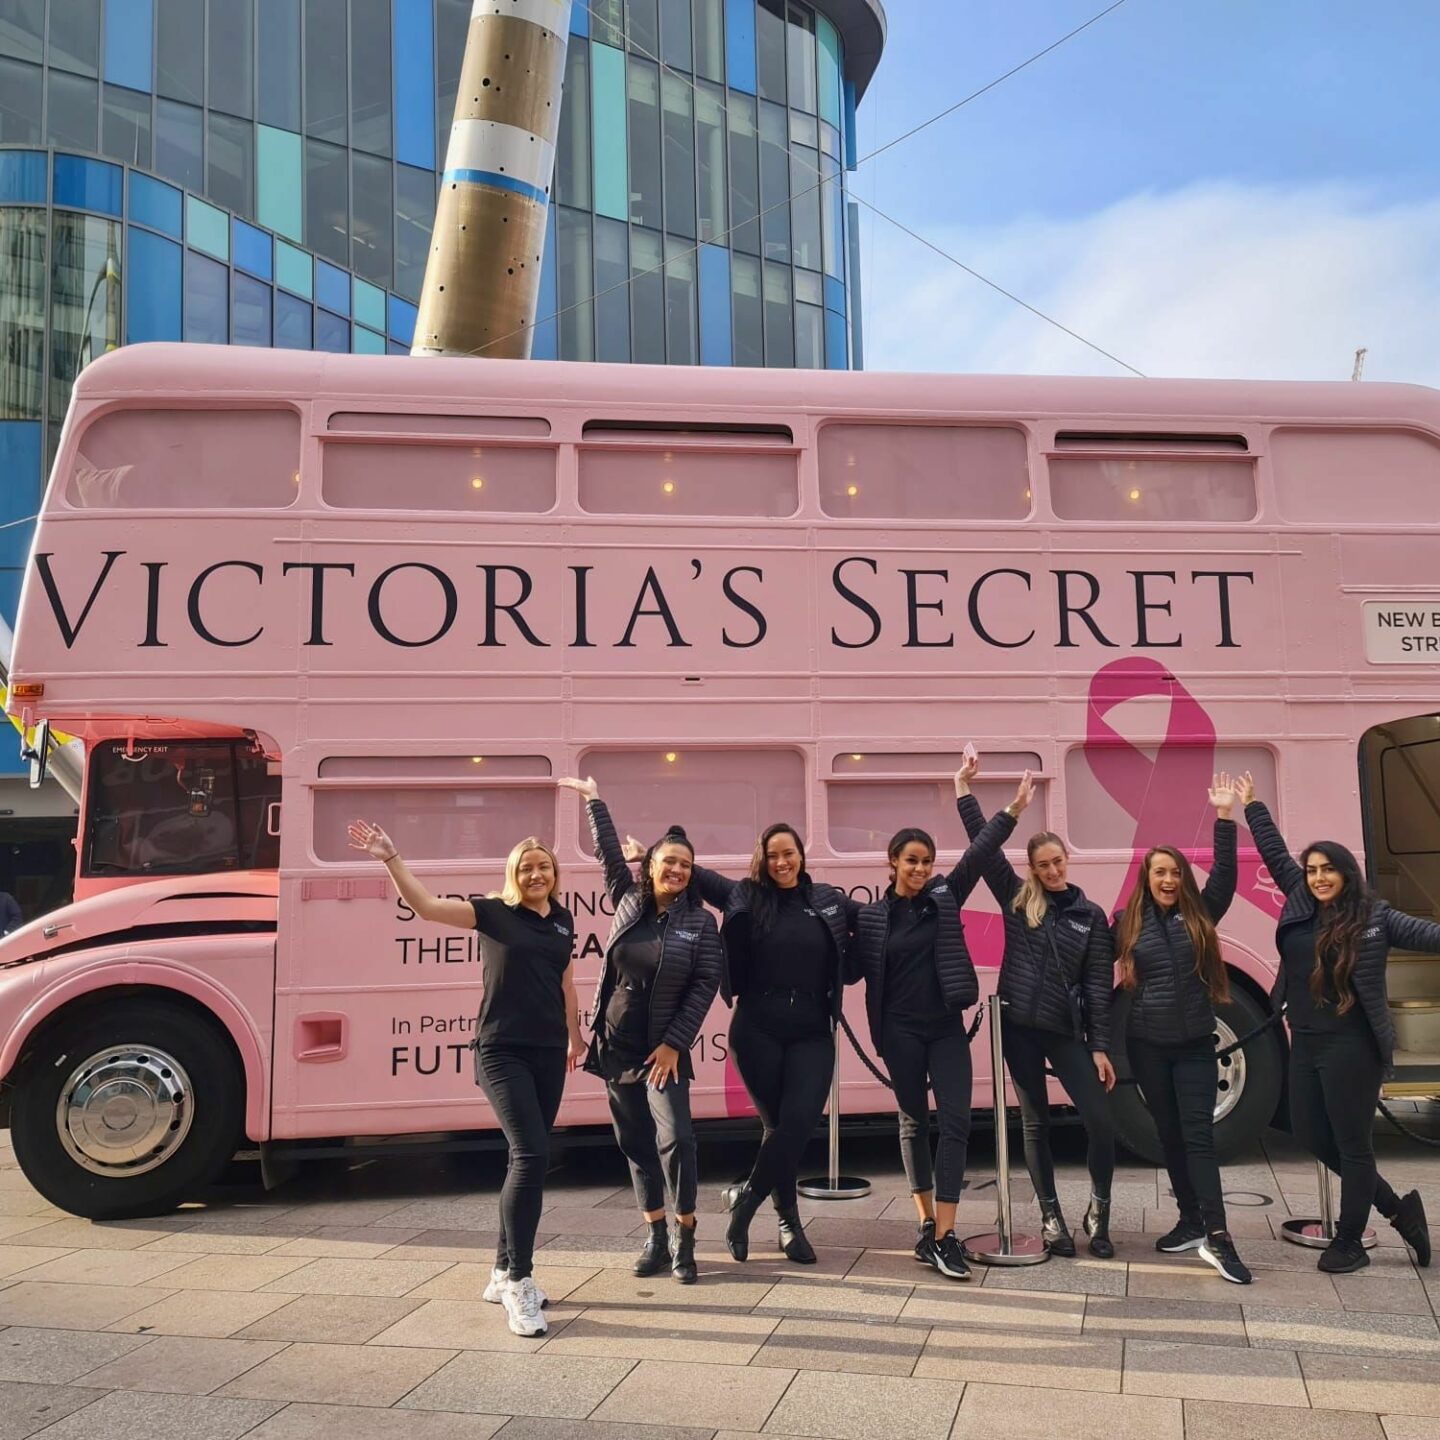 Victoria's secret bus raising awareness